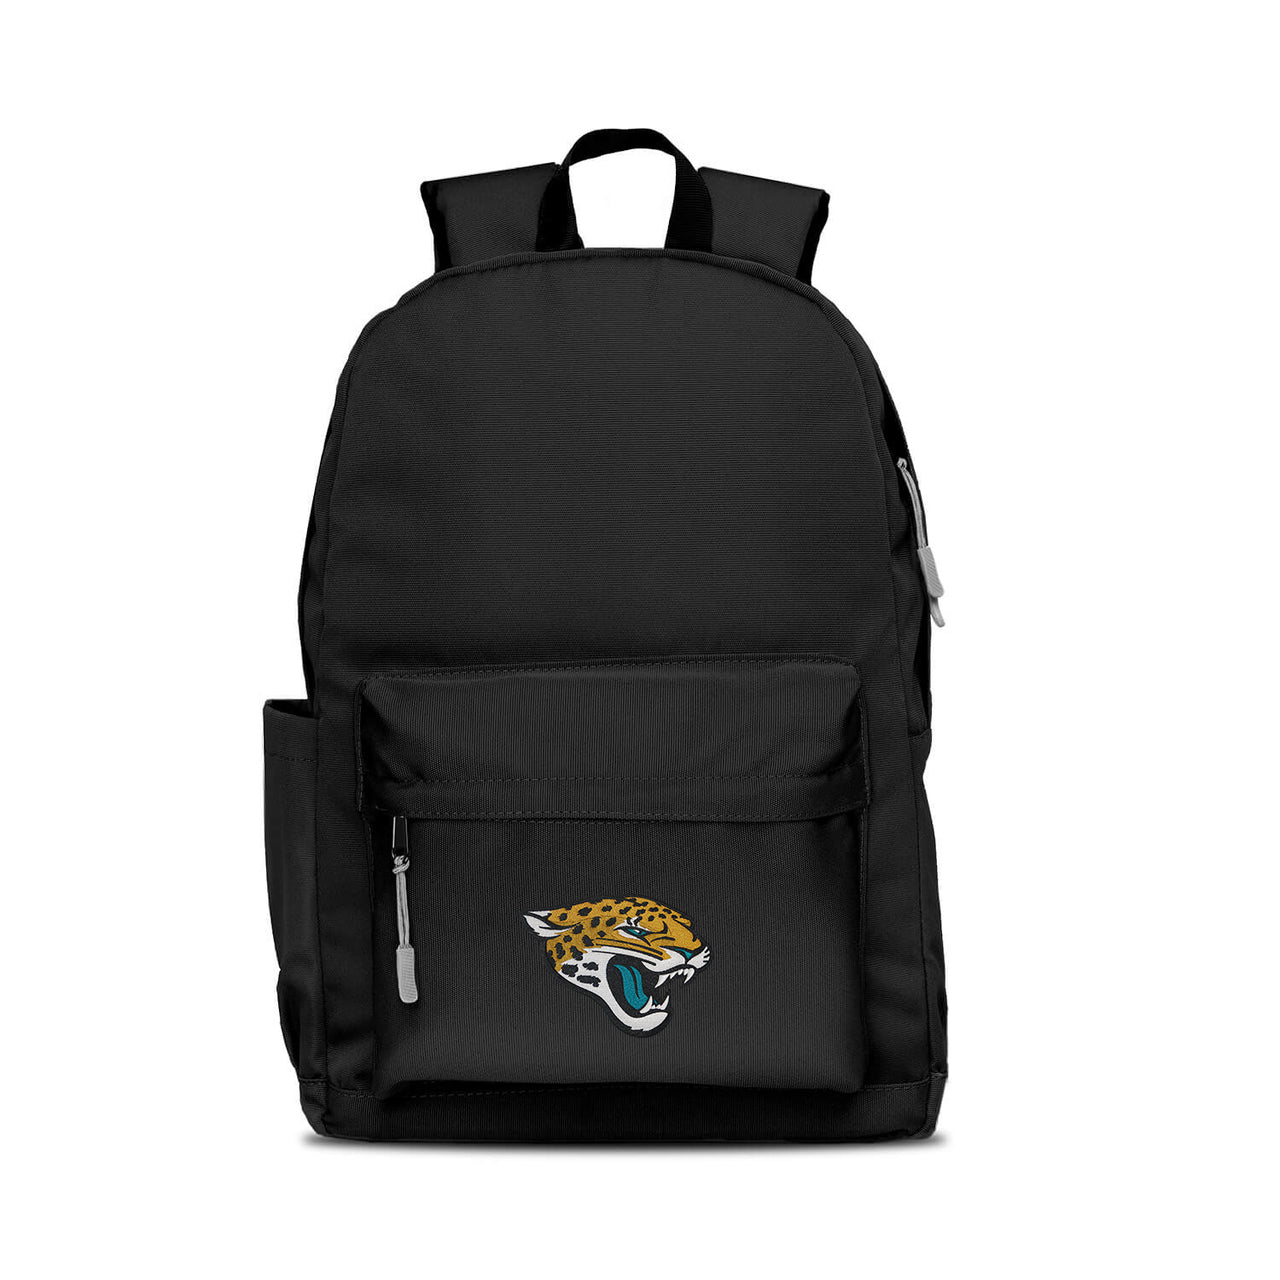 Jacksonville Jaguars Campus Laptop Backpack -BLACK